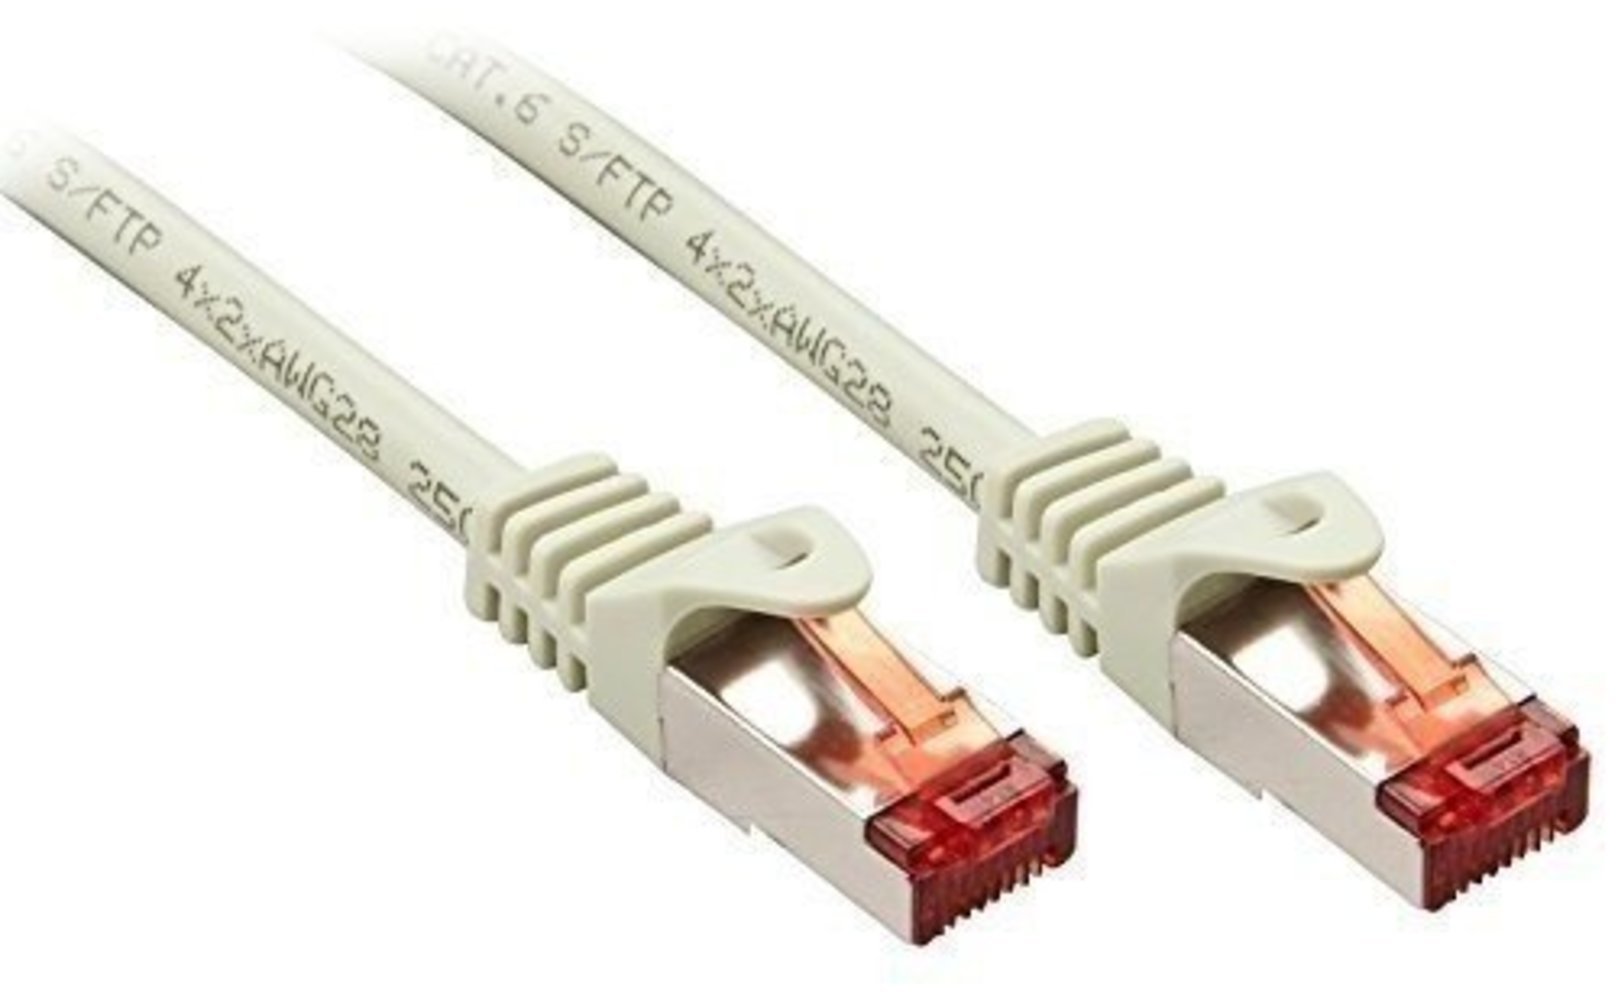  Produkttitel: Lindy Basic Cat6 S/FTP Kabel 0.5m Patchkabel - Hellgrau - Hochwertiges Netzwerkkabel für schnelle Datenübertragung